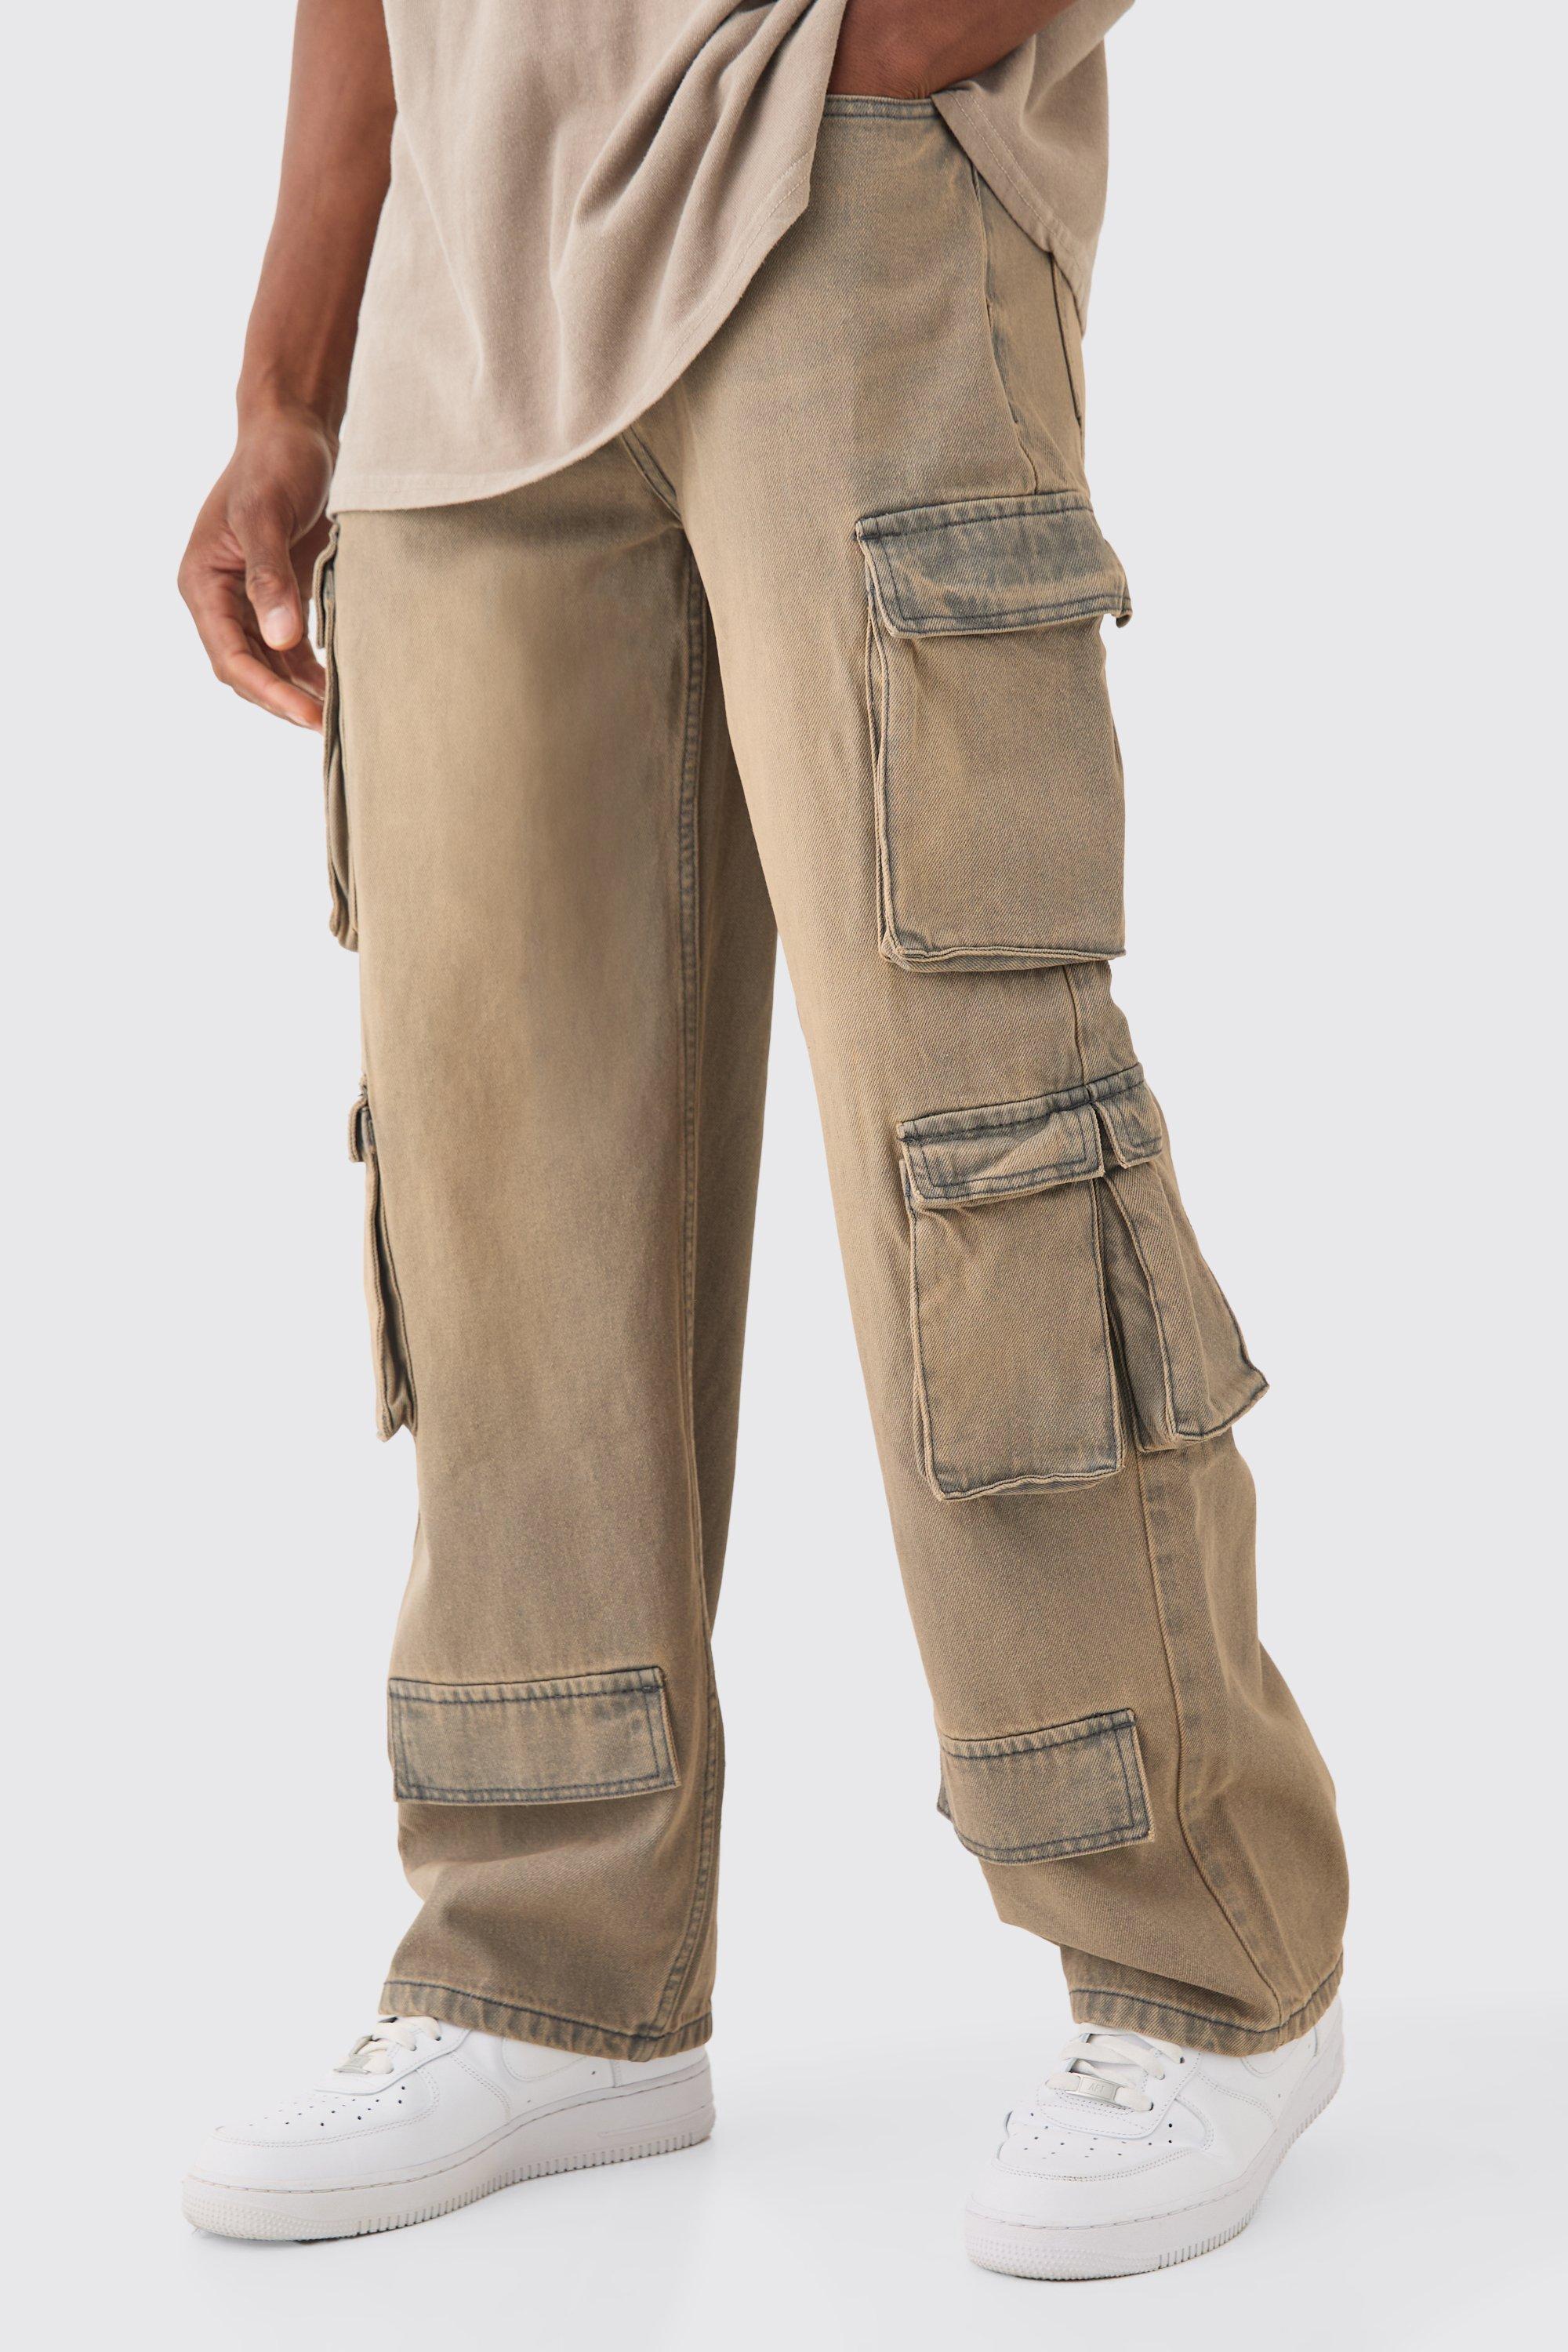 Image of Baggy Rigid Grey Tinted Multi Cargo Pocket Jeans, Grigio